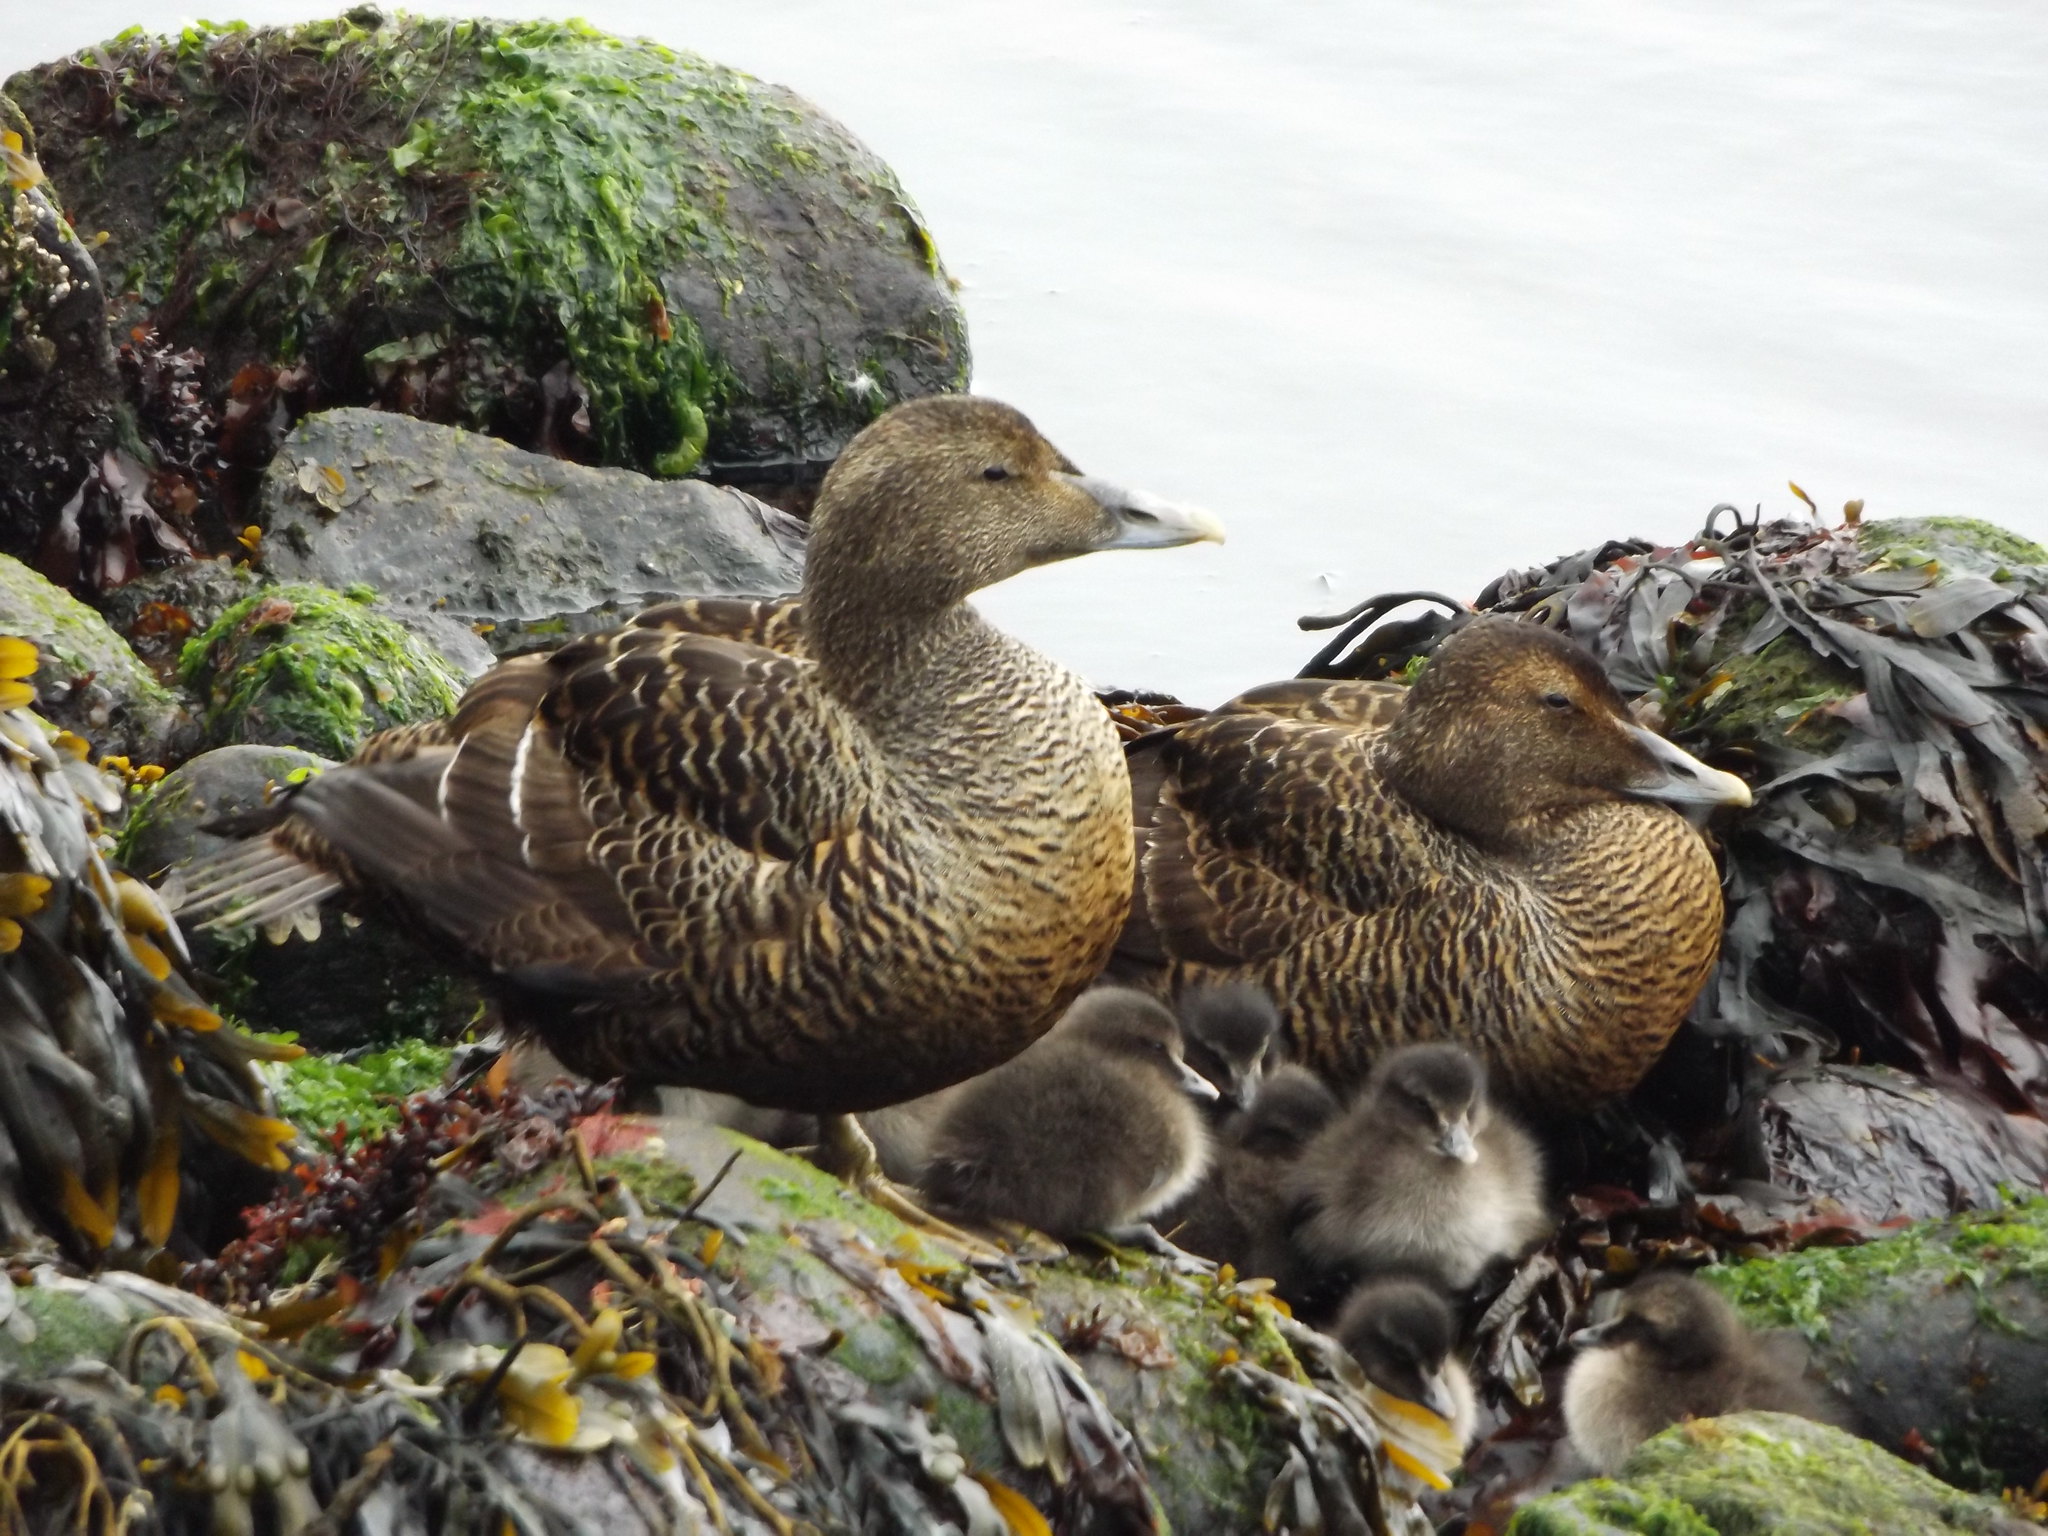 Eider Ducks with Ducklings, Kirkjubøur, Faroe Islands, 14 July 2018